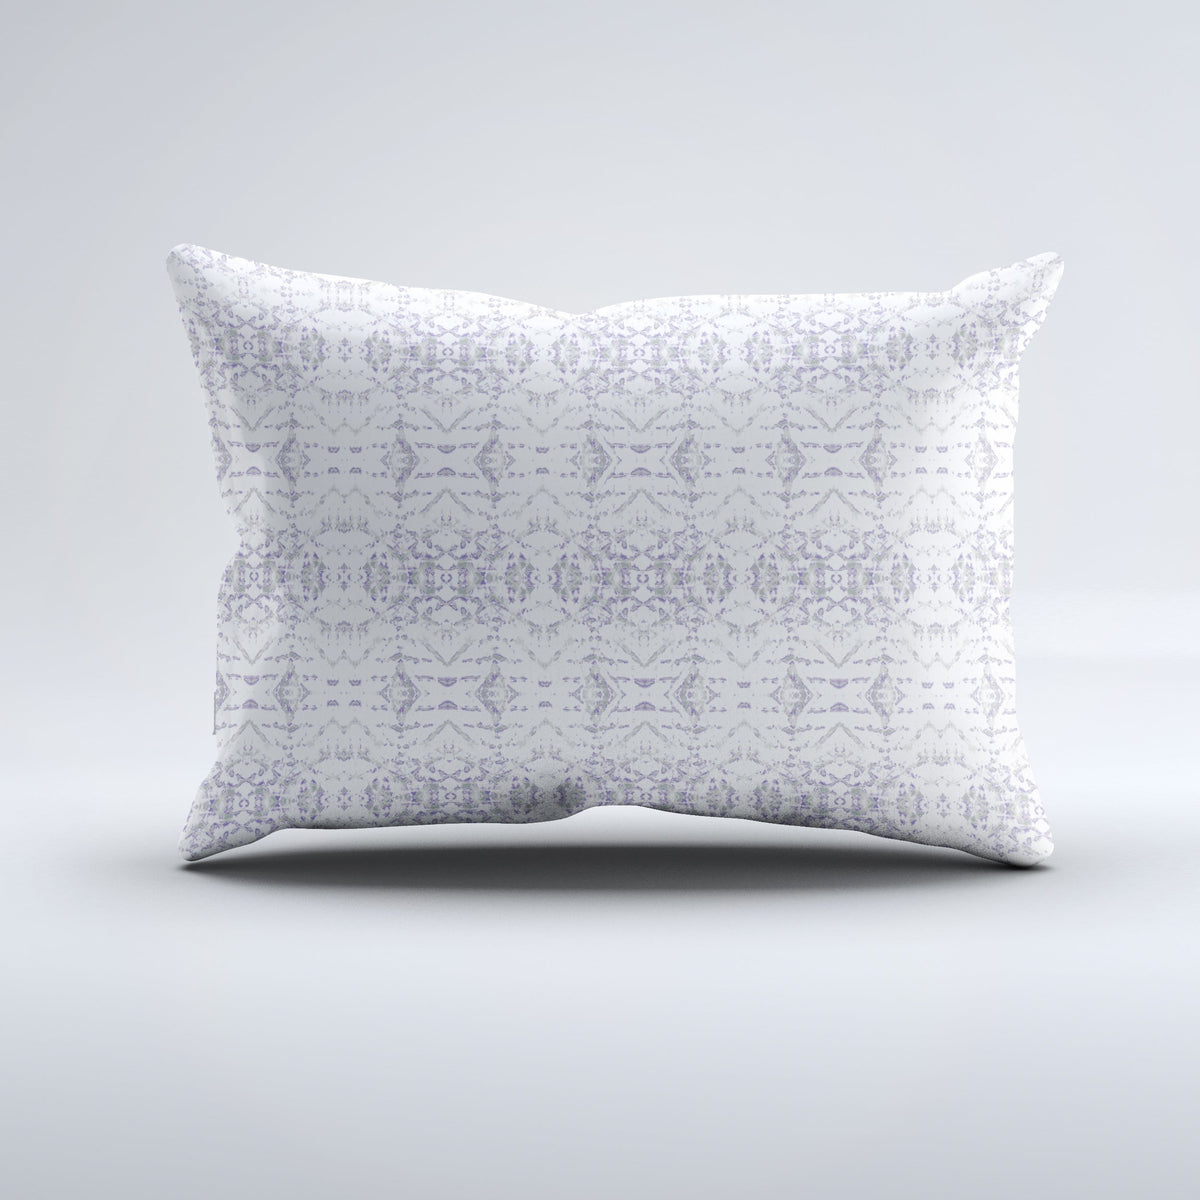 Bolster Pillow - Kimi Grey Bedding, Pillows, Bolster Pillow MWW 